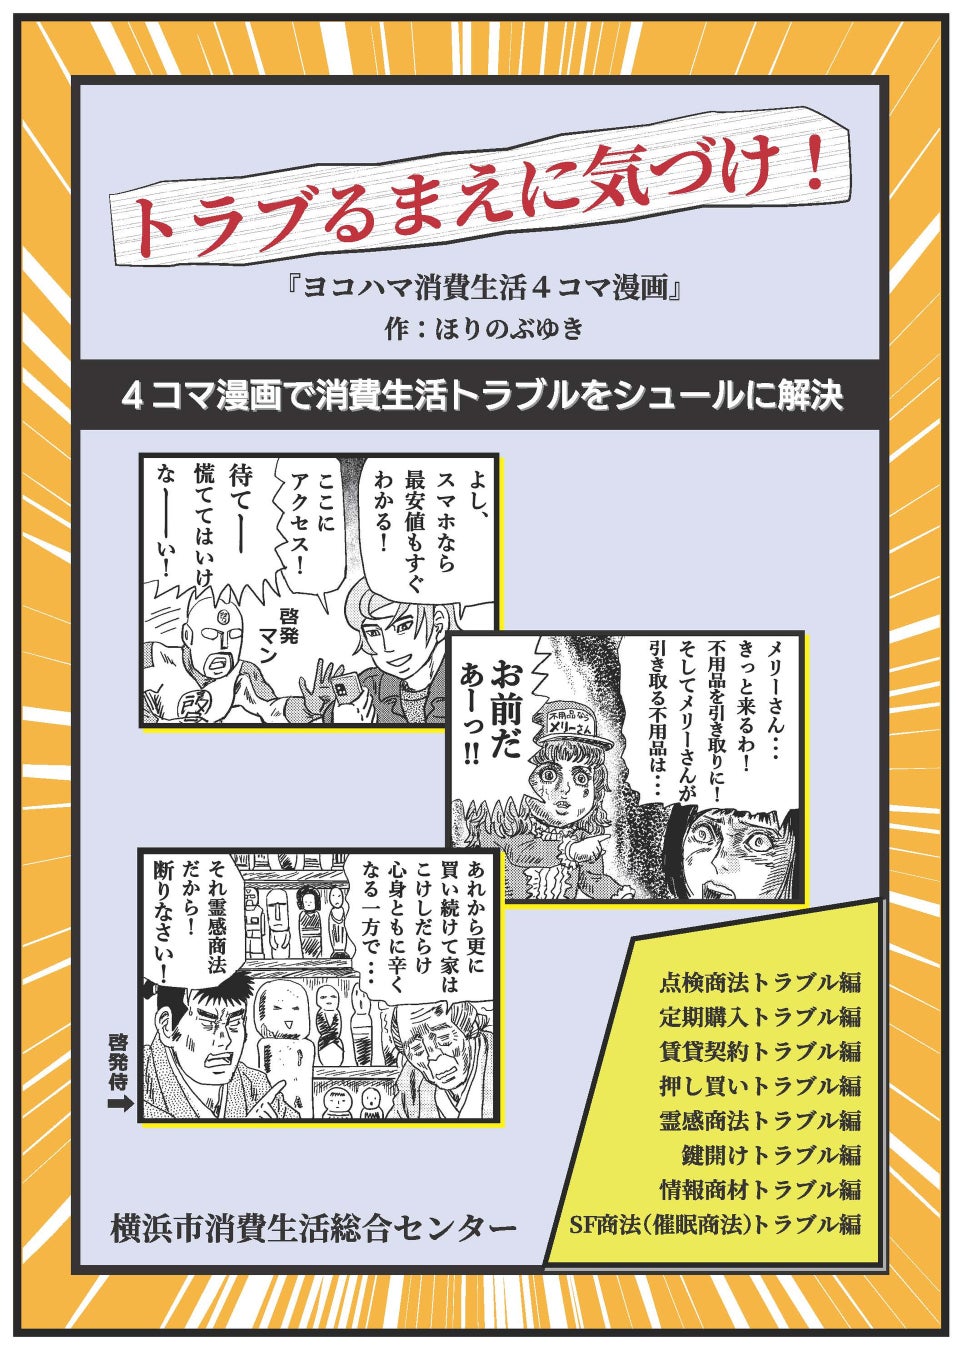 TVアニメ『ゆびさきと恋々』の毎日名シーンカレンダーの受注を開始！！アニメ・漫画のオリジナルグッズを販売する「AMNIBUS」にて